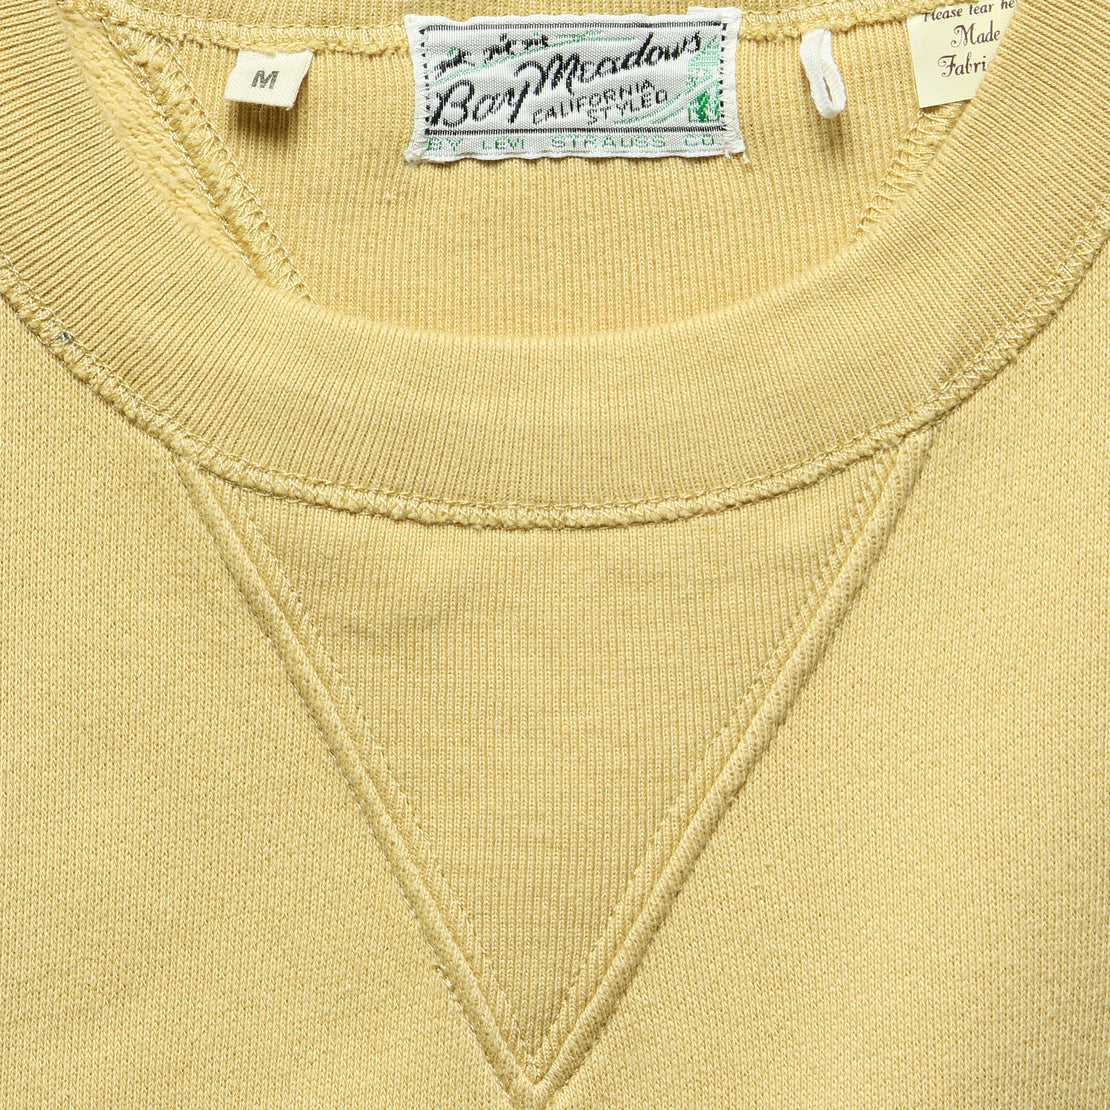 Bay Meadows Sweatshirt - Custard